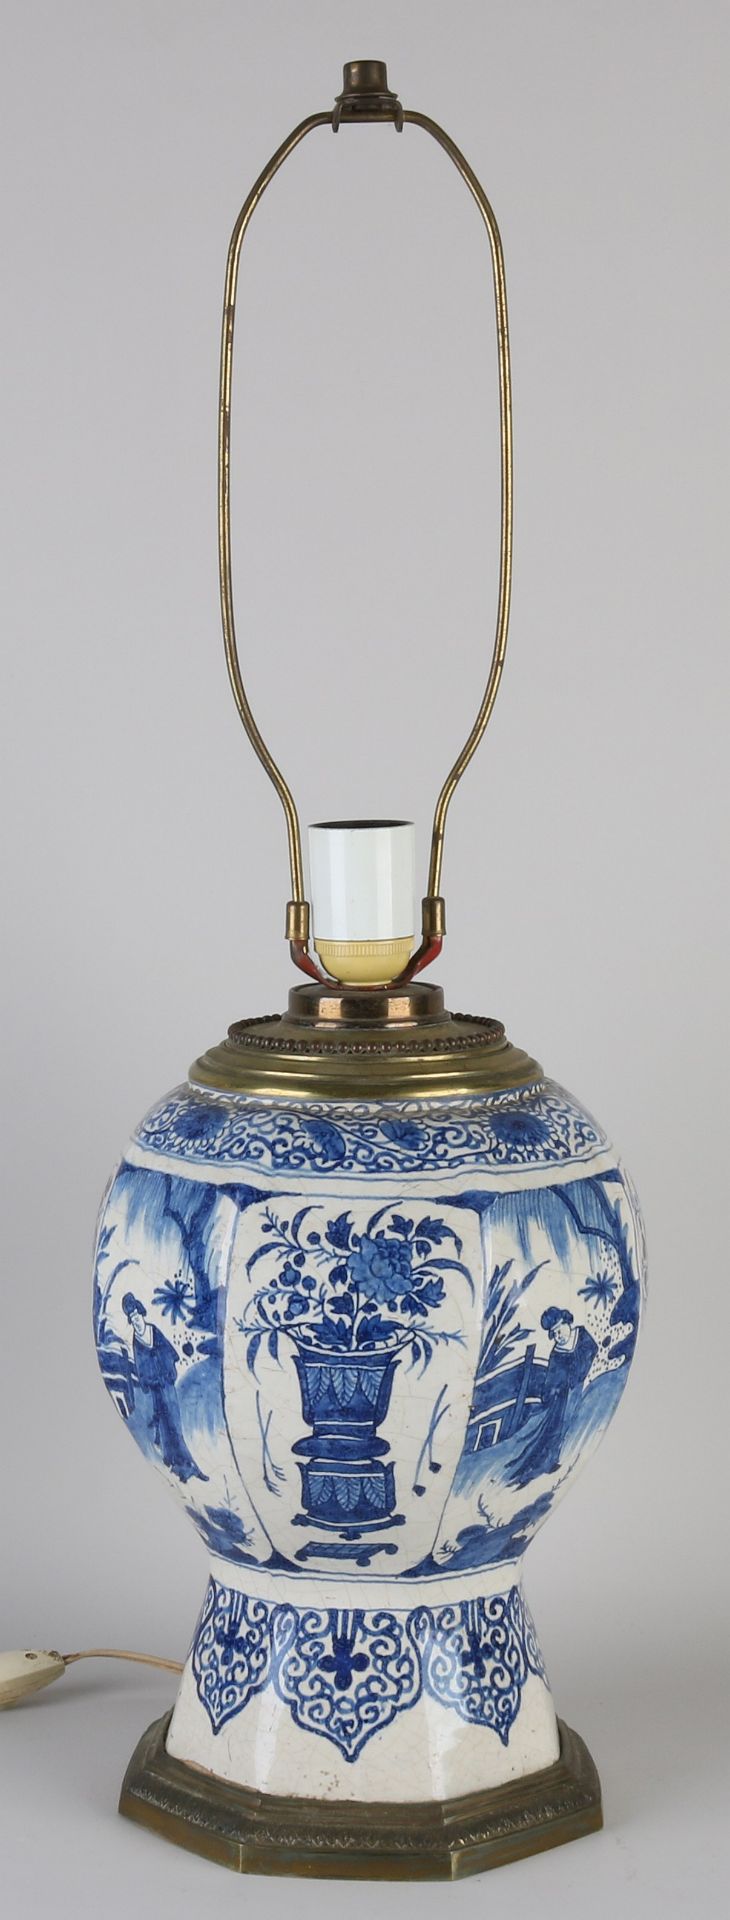 18th century Delft vase lamp